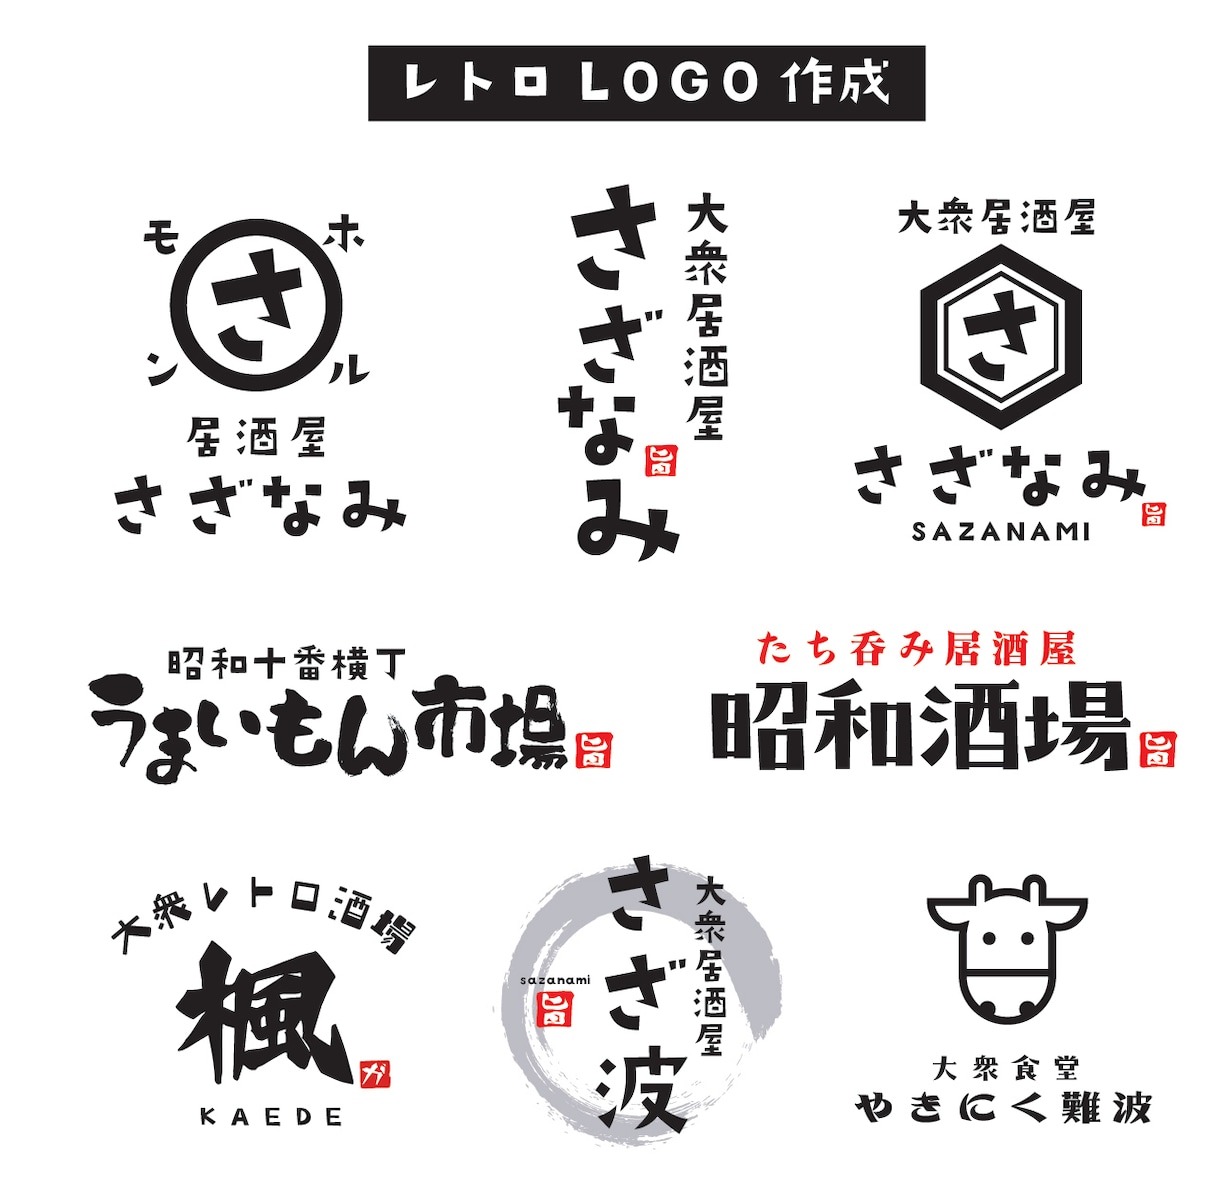 プロがレトロロゴを制作いたし【aiデータ込み】ます 店舗様向けのお洒落でレトロなロゴをプロのデザイナーが制作 イメージ1